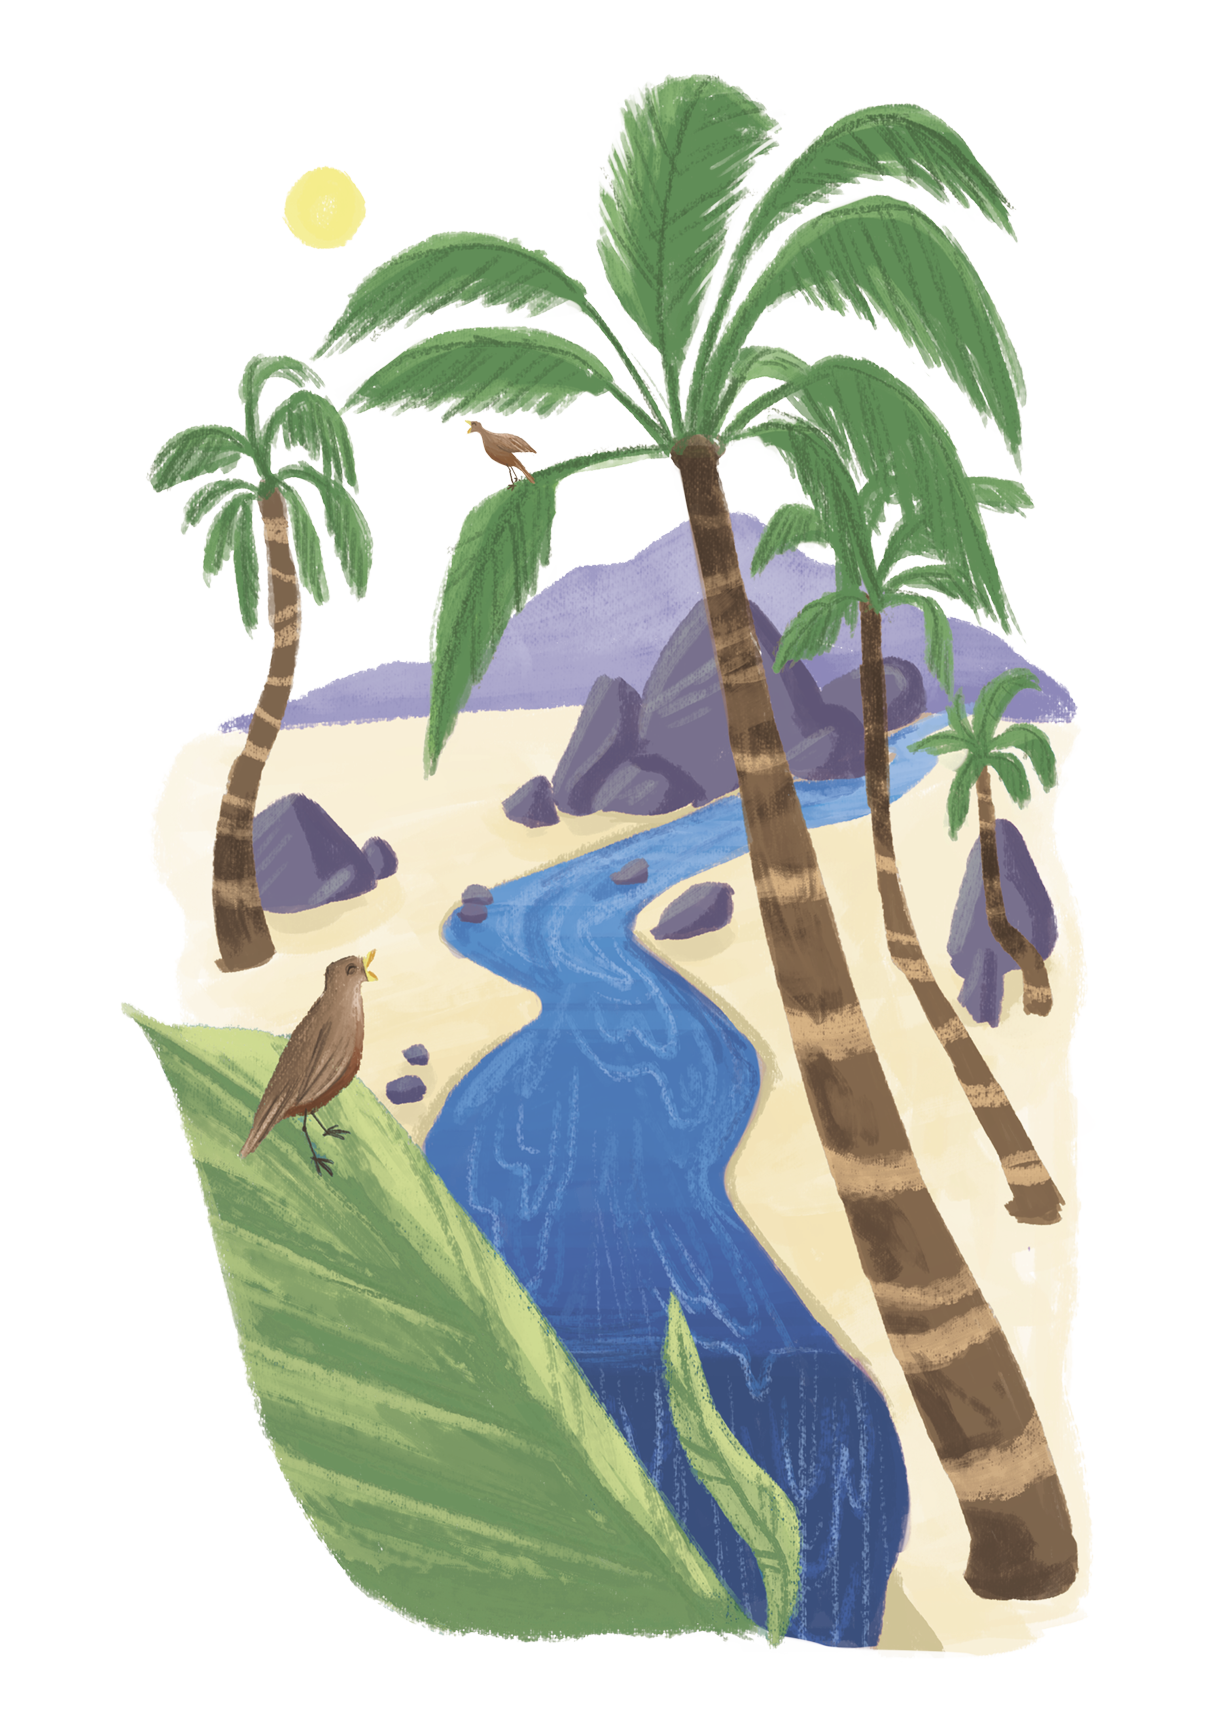 Ilustração. O curso de um rio com rochas e palmeiras nas laterais. Há pássaros em algumas das folhas e ao fundo, o Sol.